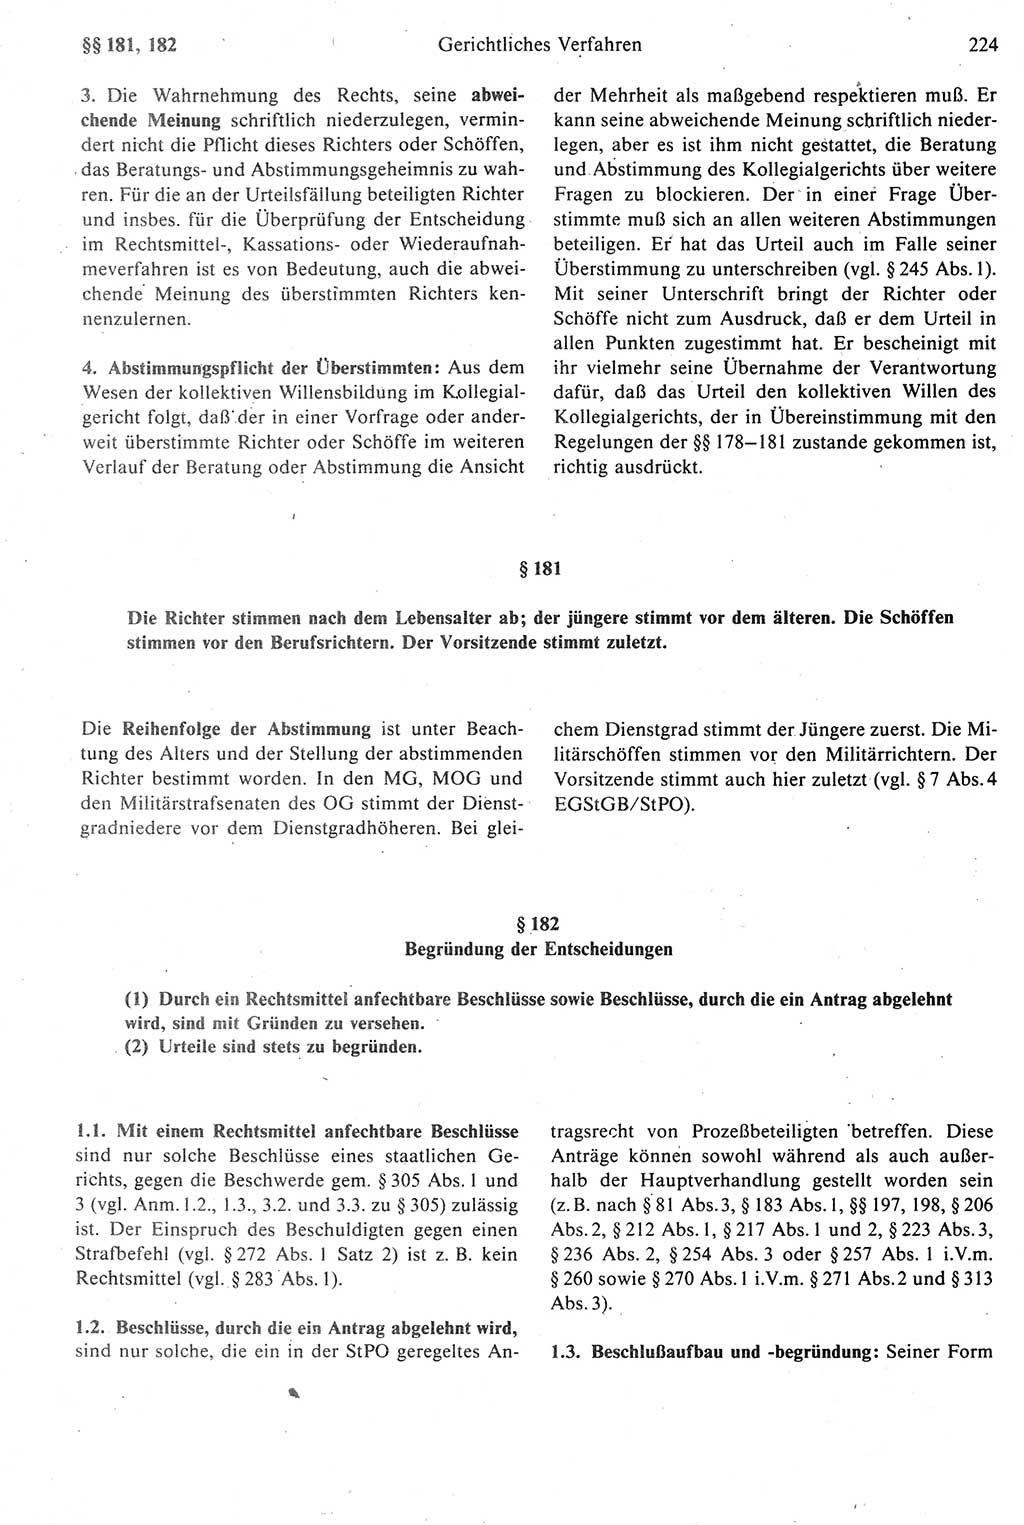 Strafprozeßrecht der DDR [Deutsche Demokratische Republik], Kommentar zur Strafprozeßordnung (StPO) 1987, Seite 224 (Strafprozeßr. DDR Komm. StPO 1987, S. 224)